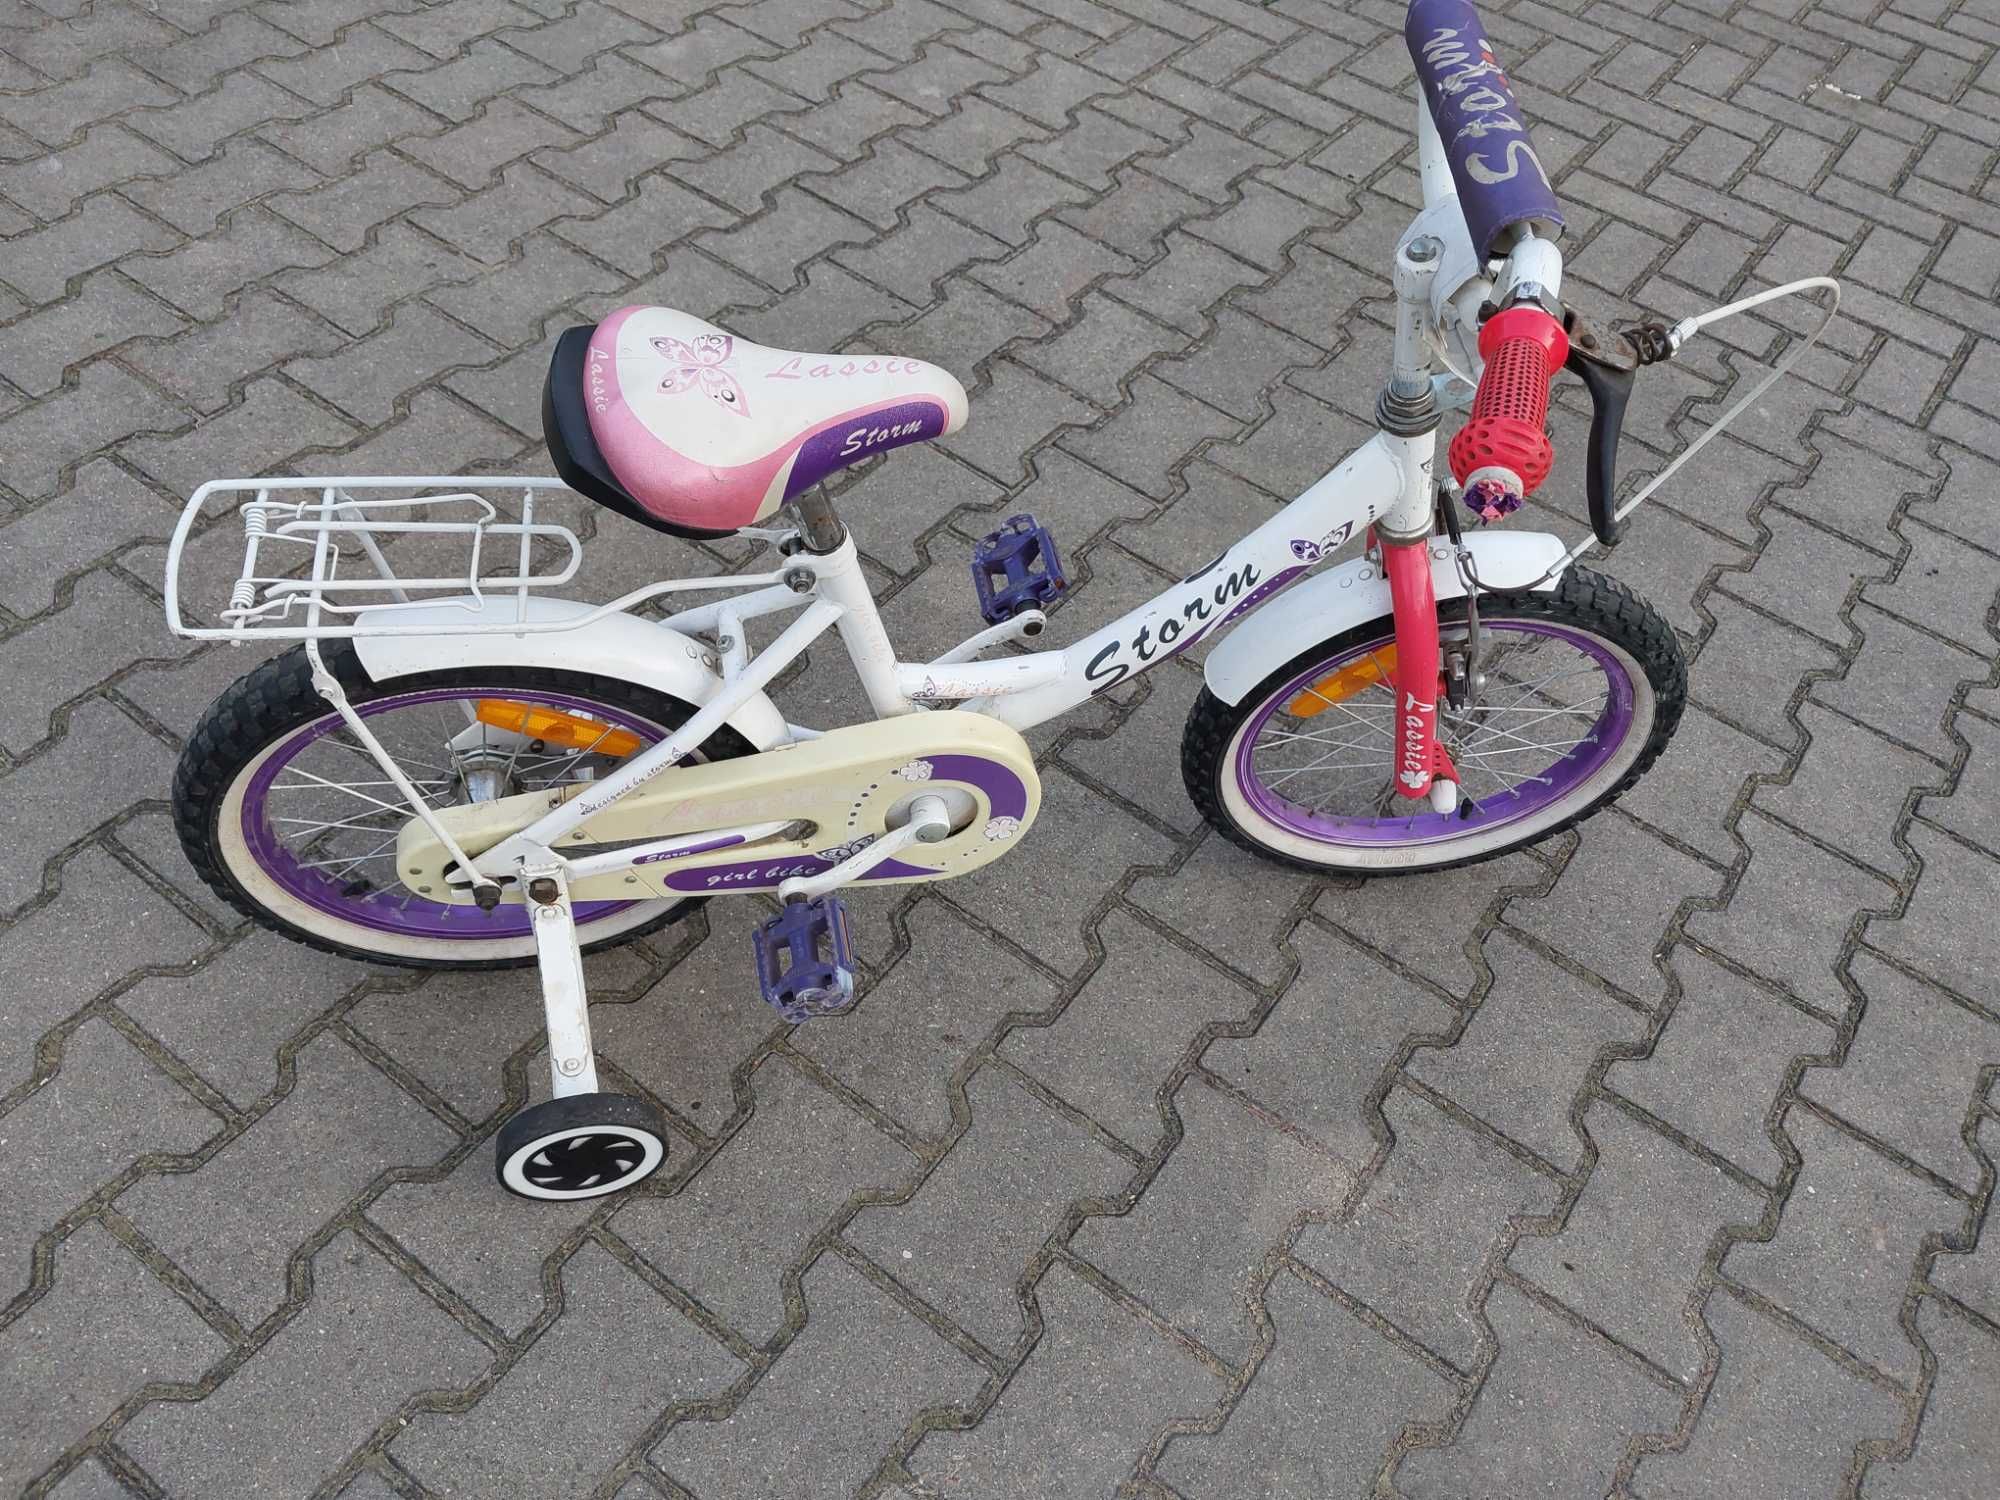 Rower dla dziewczynki 16 cali